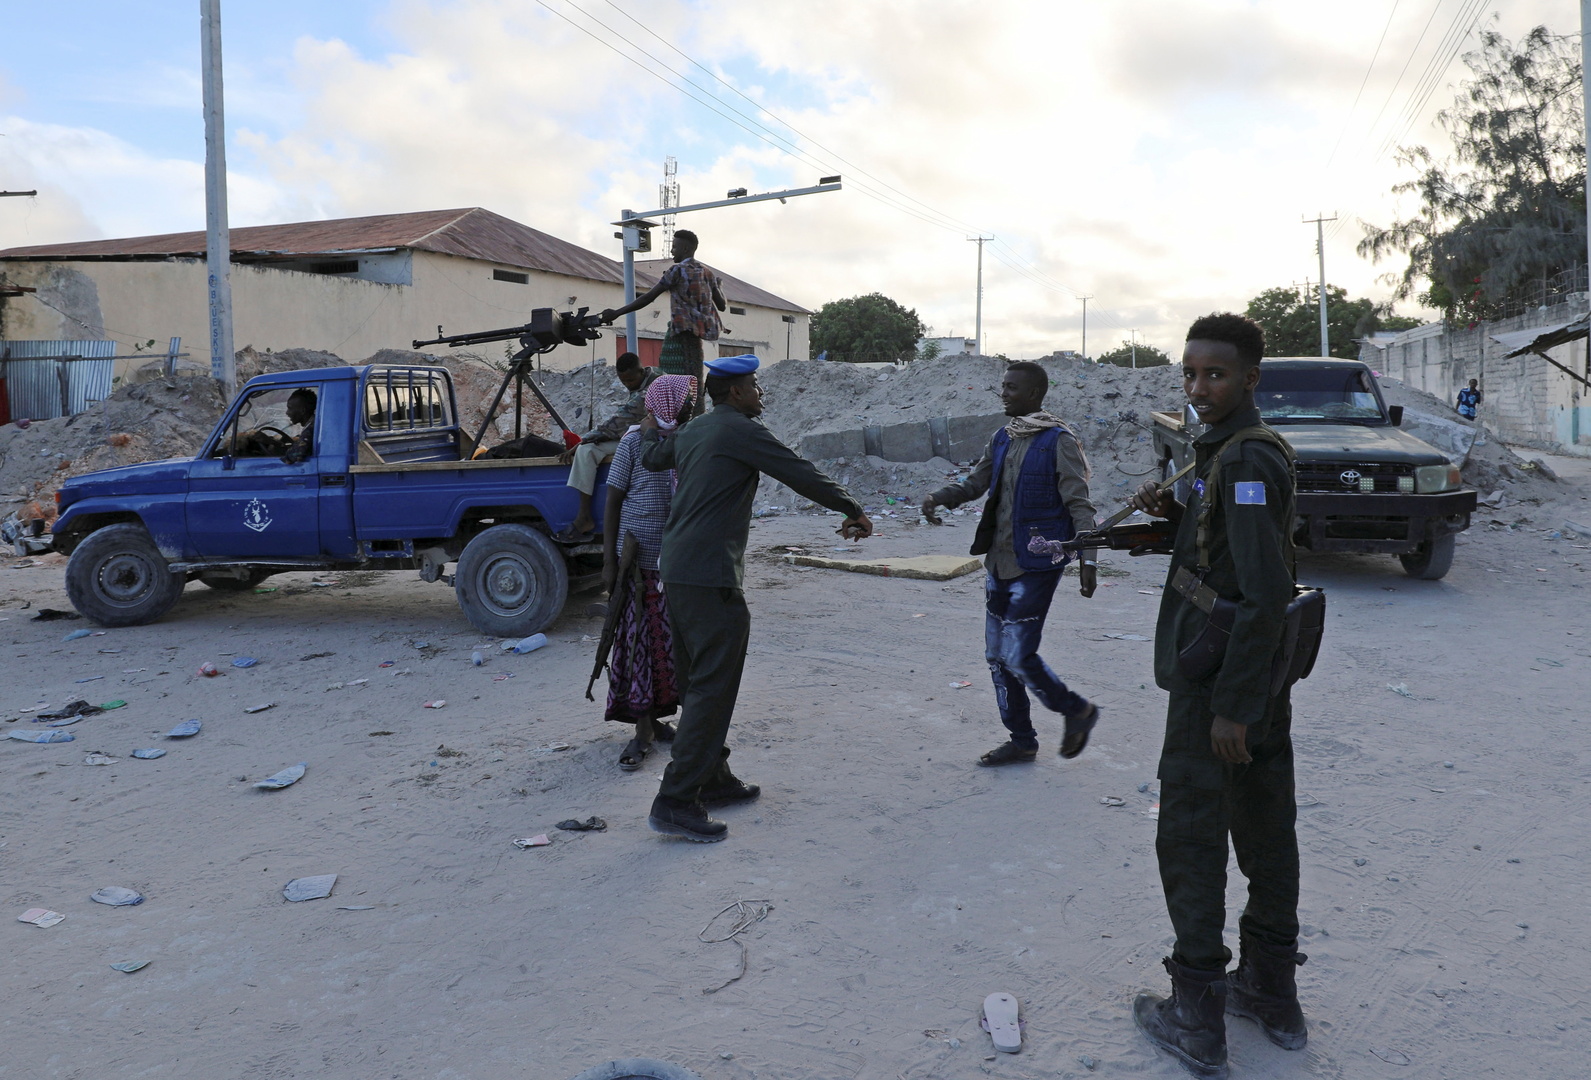 15 قتيلا على الأقل بهجوم انتحاري استهدف معسكرا للجيش في الصومال